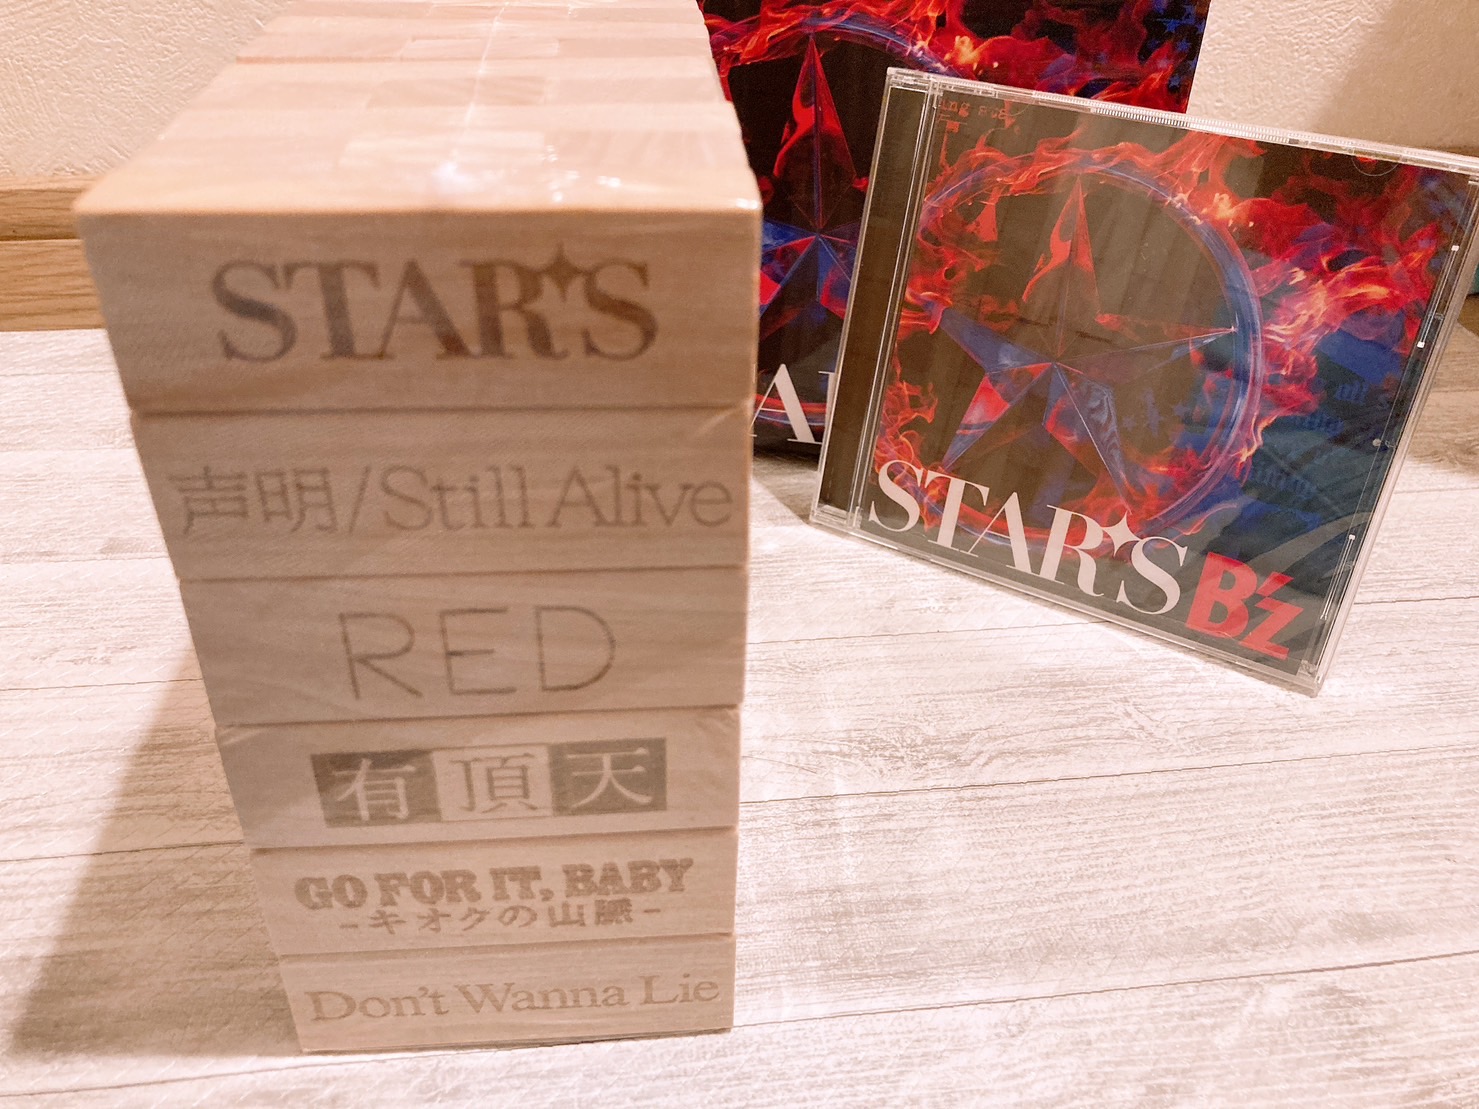 B'z「STARS」『数量限定STARS盤』の商品を撮影した写真